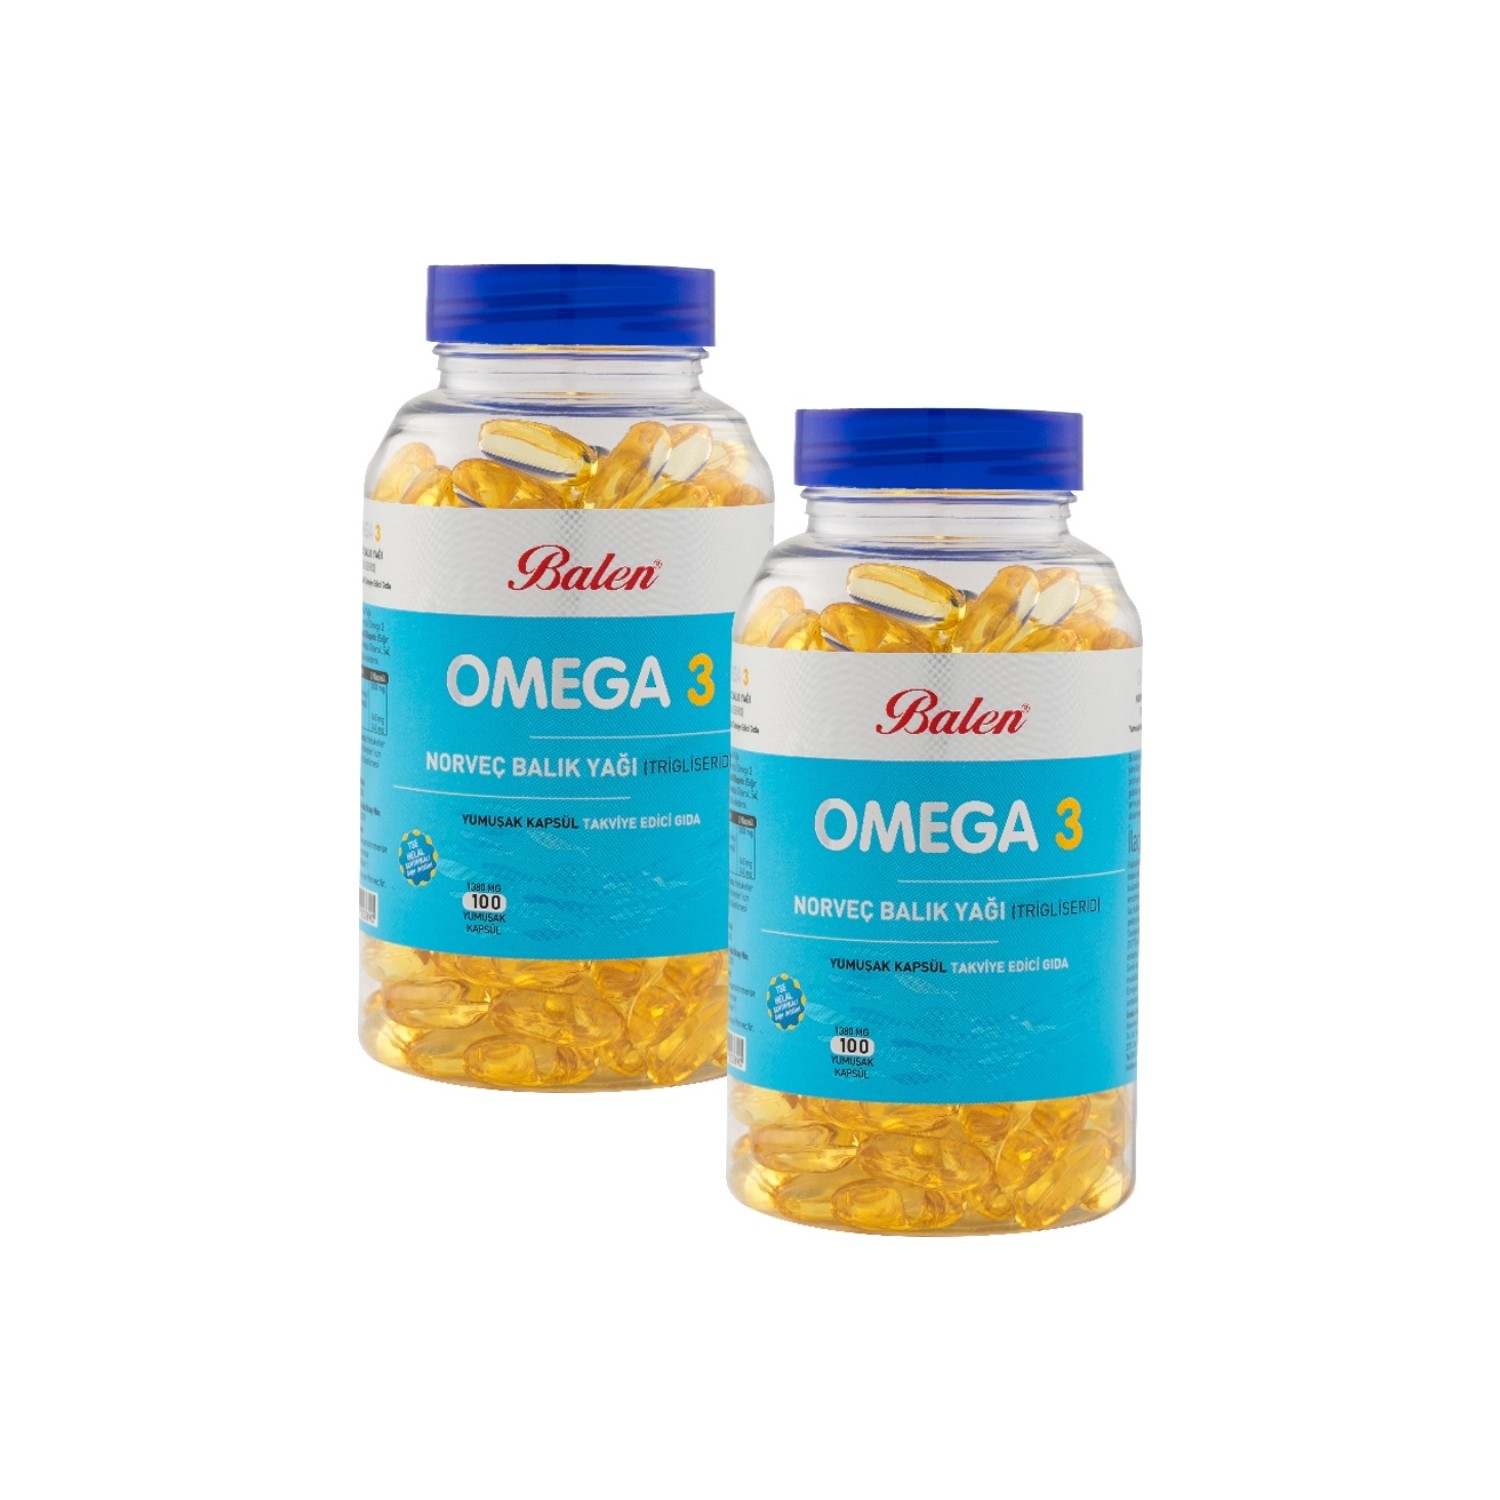 Норвежский рыбий жир Balen Omega-3 (триглицерид) 1380 мг, 2 упаковки по 100 капсул рыбий жир 1000мг muscletech platinum 100% premium fish oil 100 капсул омега 3 для мозга зрения сердца иммунитета